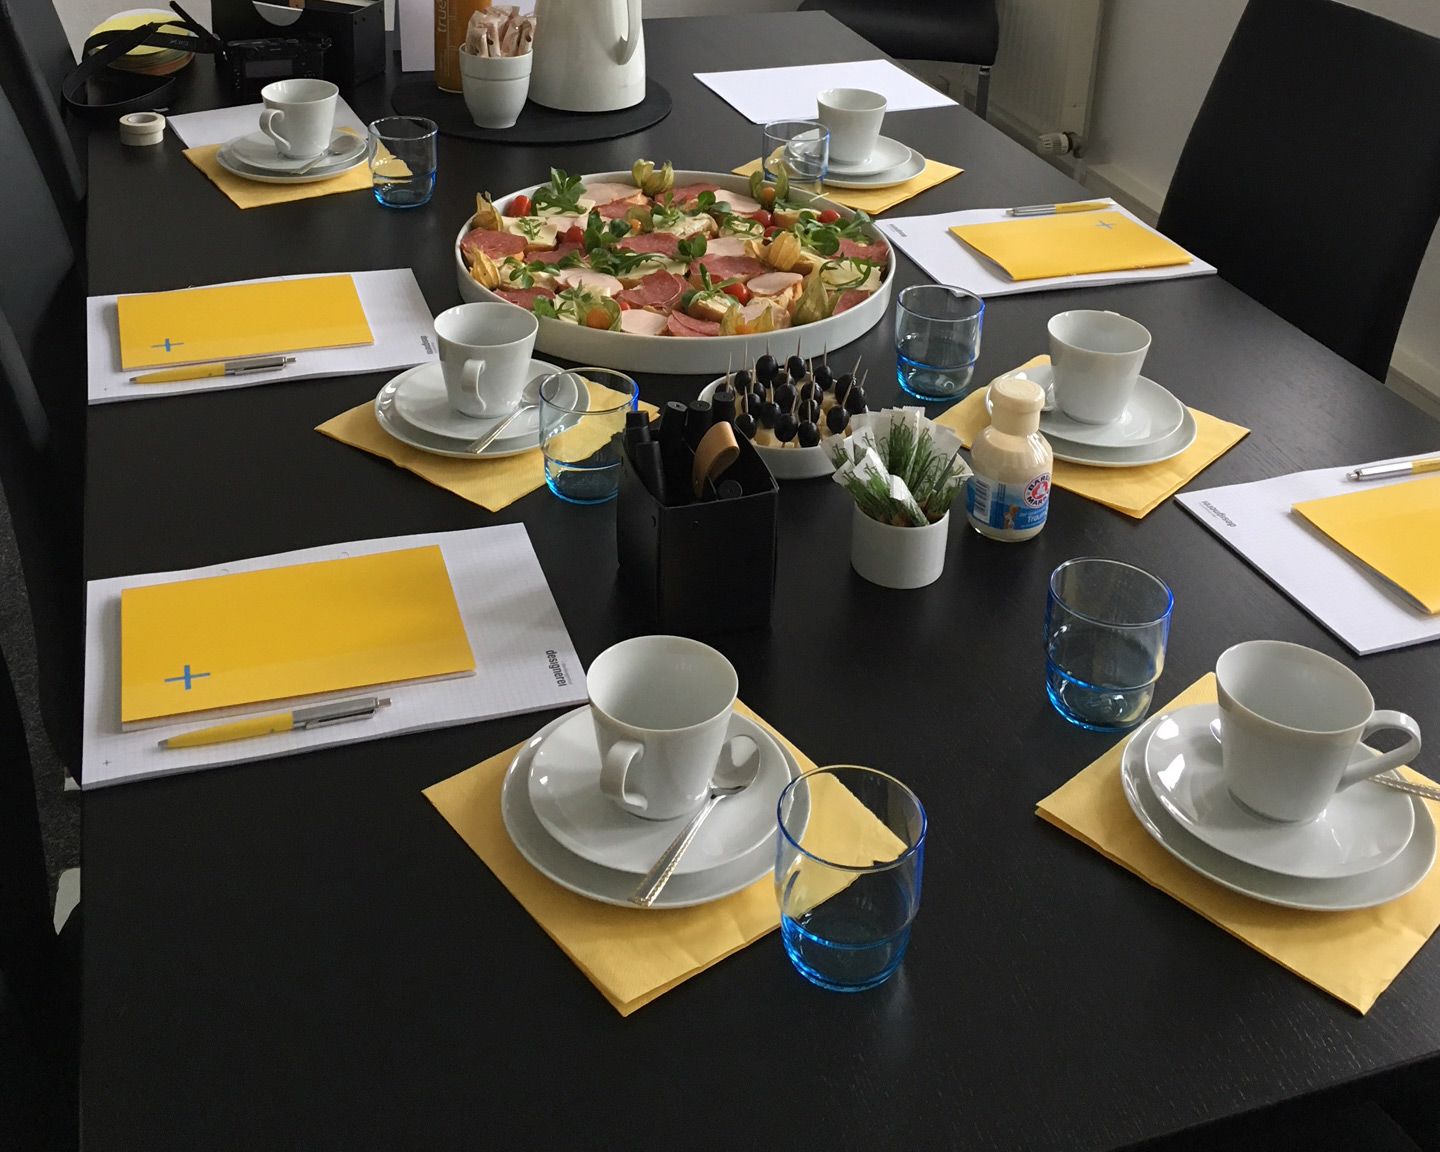 Fertig für den Strategieworkshop! Blick auf den vorbereiteten Sitzungstisch mit Arbeitsmaterialien, Kaffeetassen, Gläsern und Imbiss.